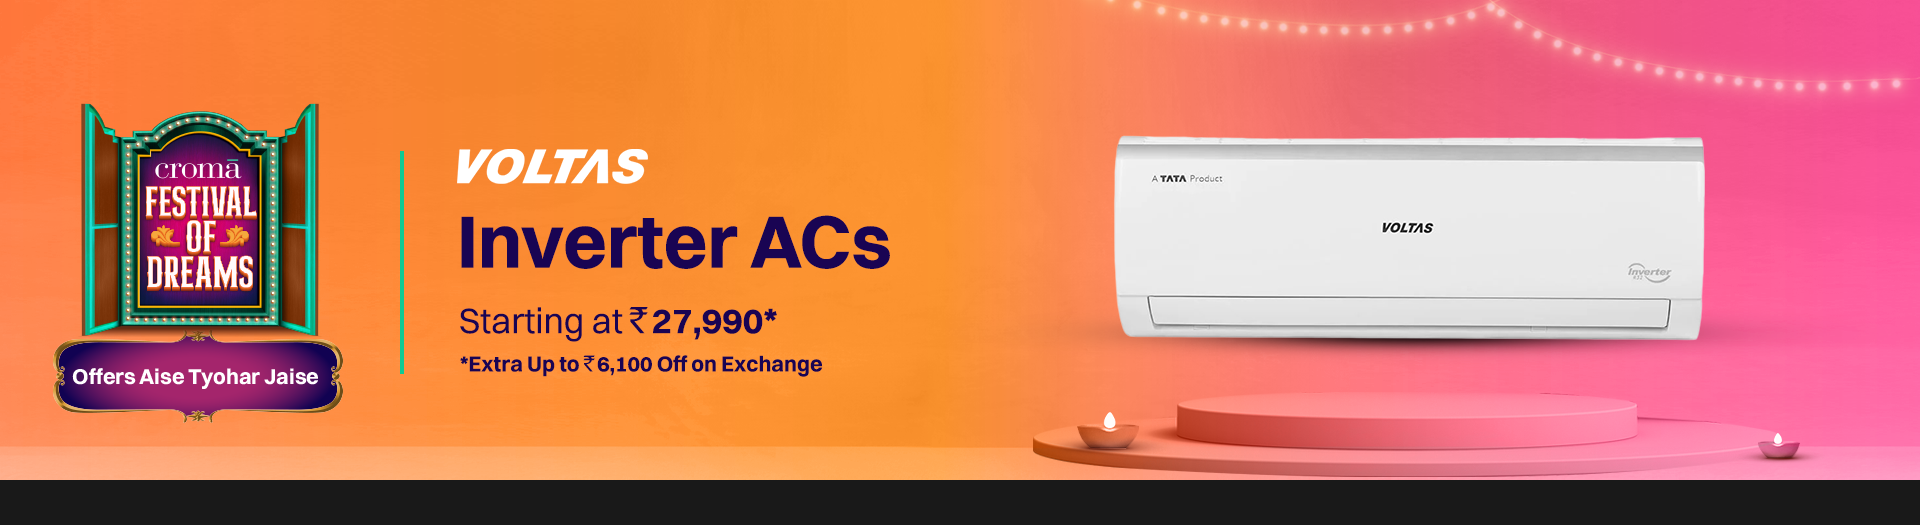 croma.com - Voltas Inverter Air Conditioner